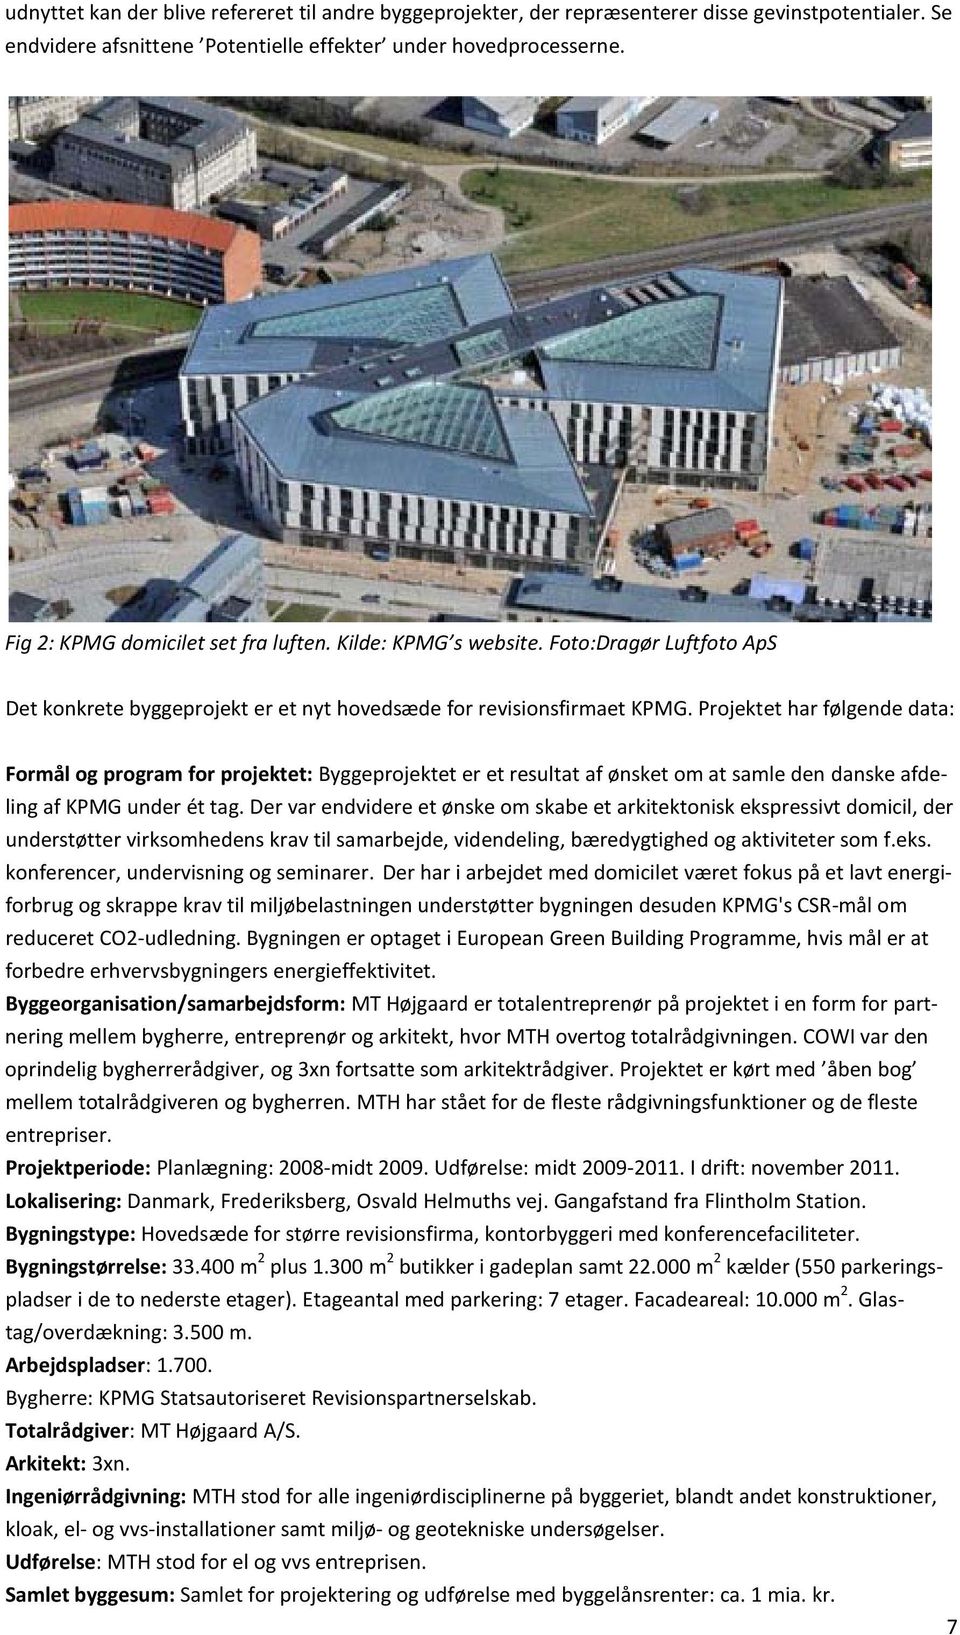 Projektet har følgende data: Formål og program for projektet: Byggeprojektet er et resultat af ønsket om at samle den danske afdeling af KPMG under ét tag.